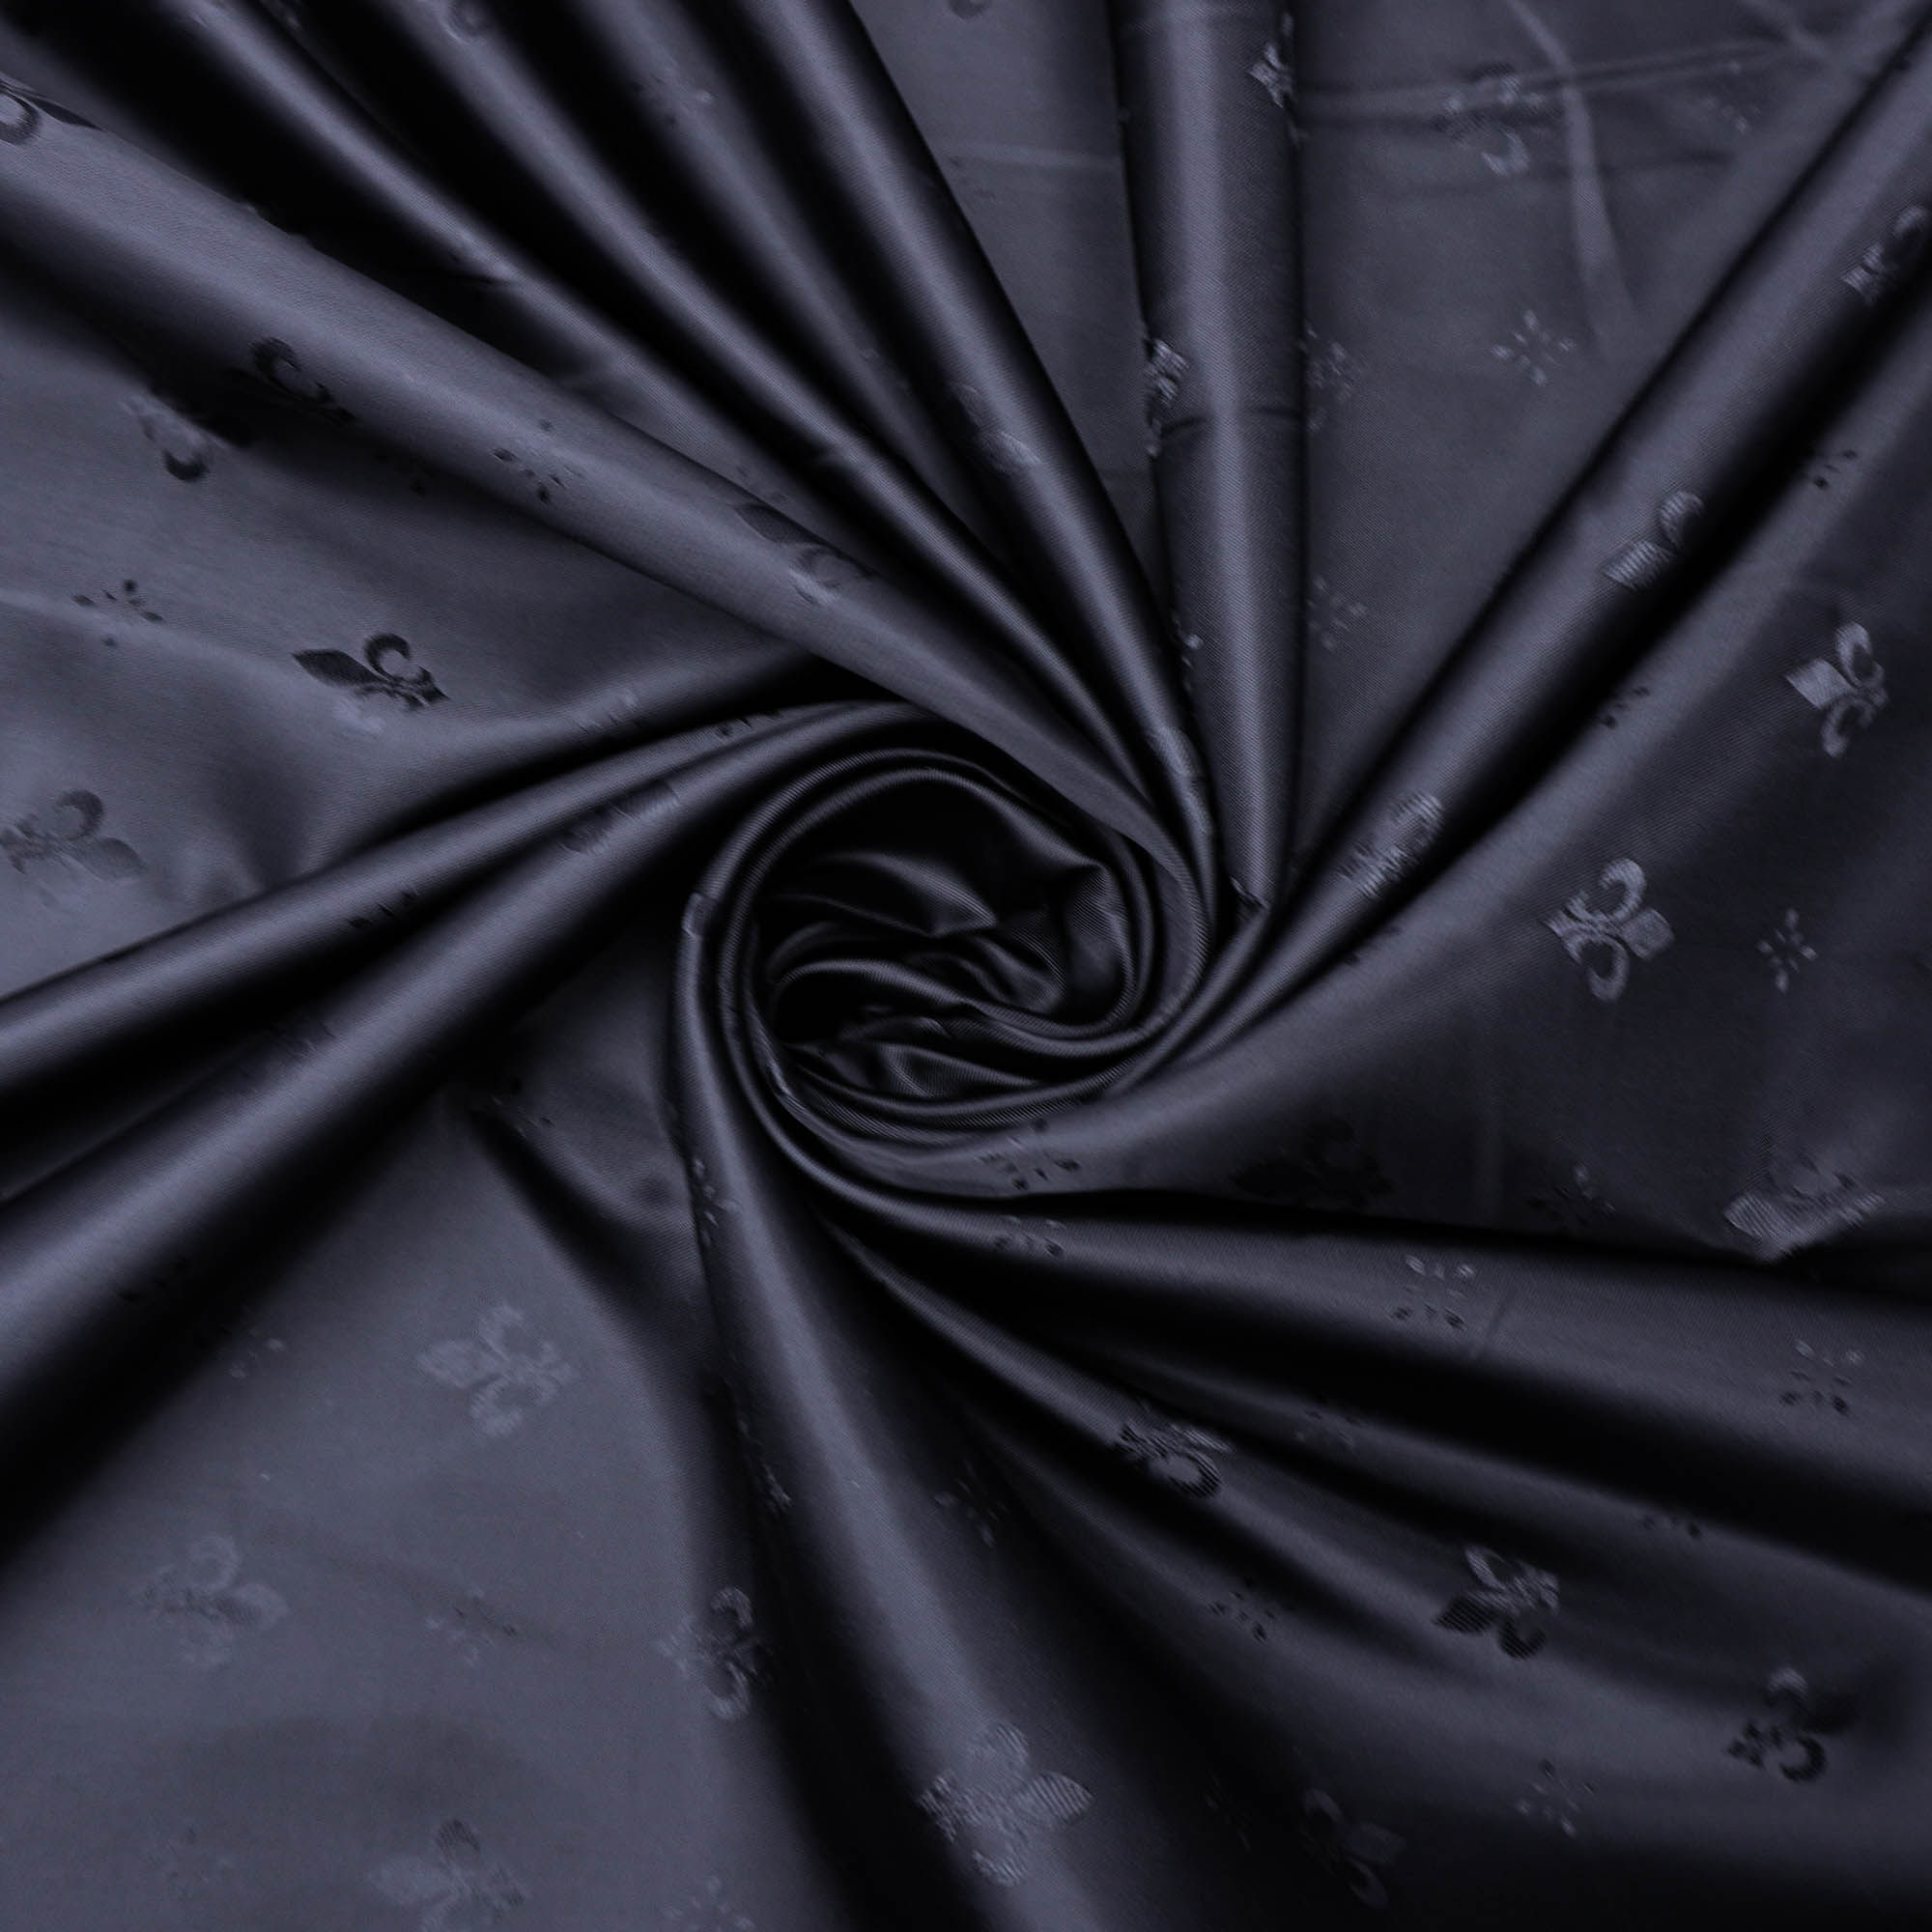 Tecido forro maquinetado flor de lis preto